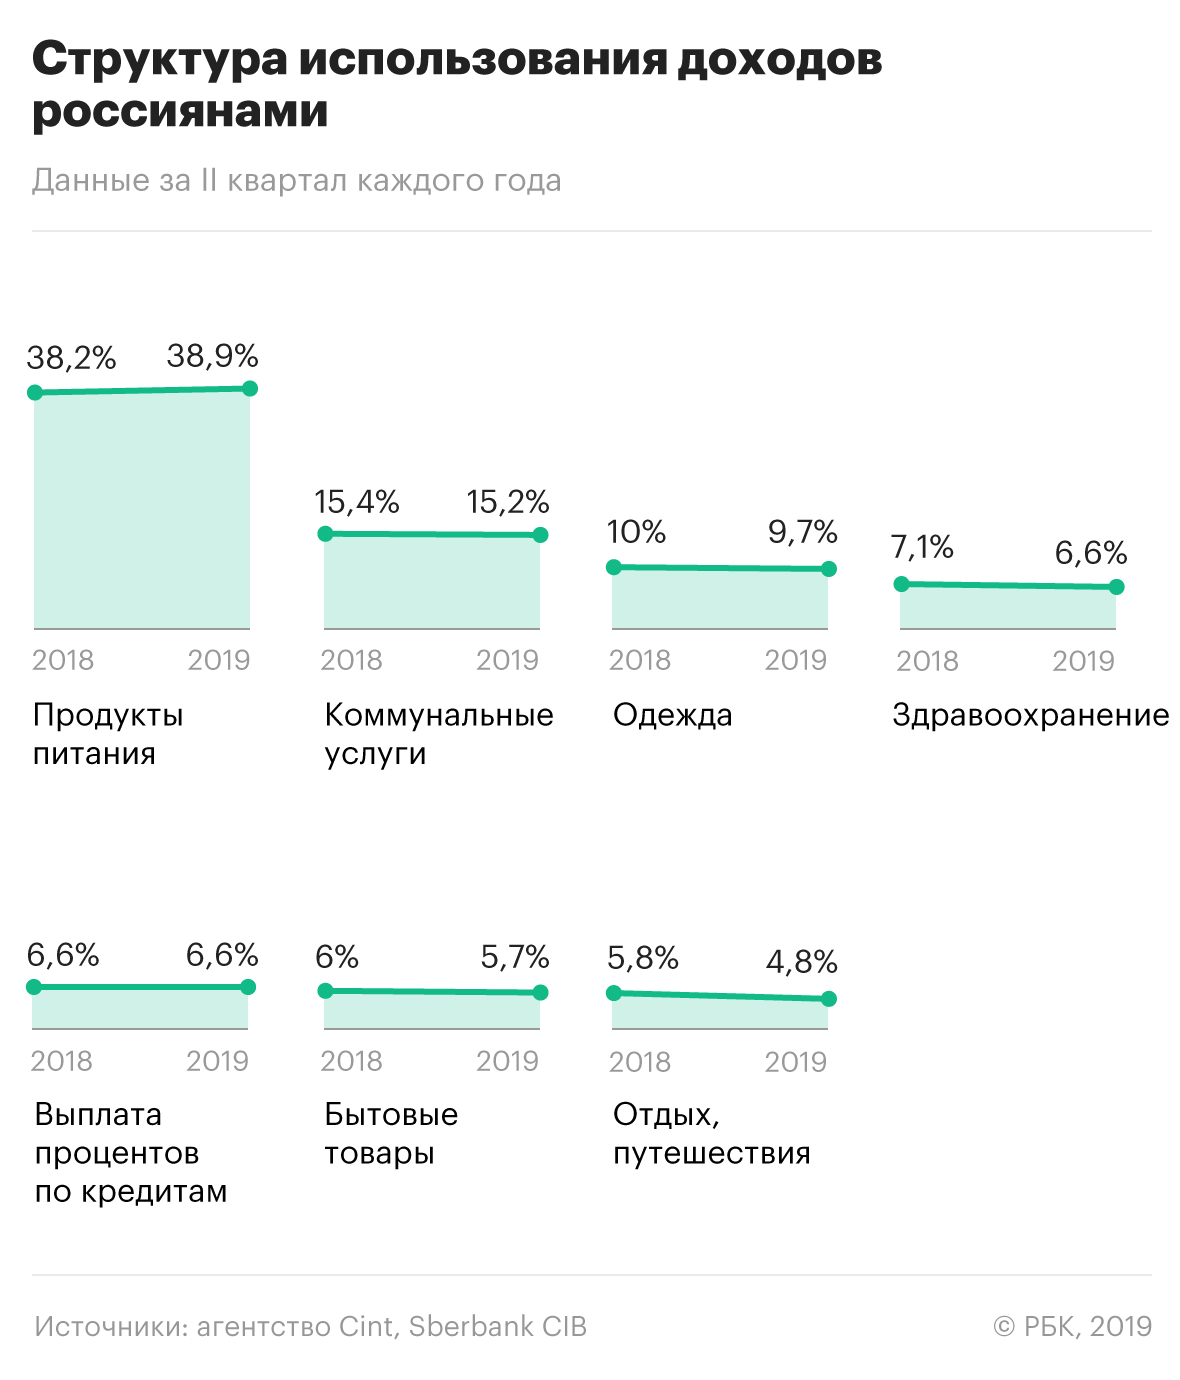 Сбербанк спрогнозировал неизменность высоких расходов россиян на еду